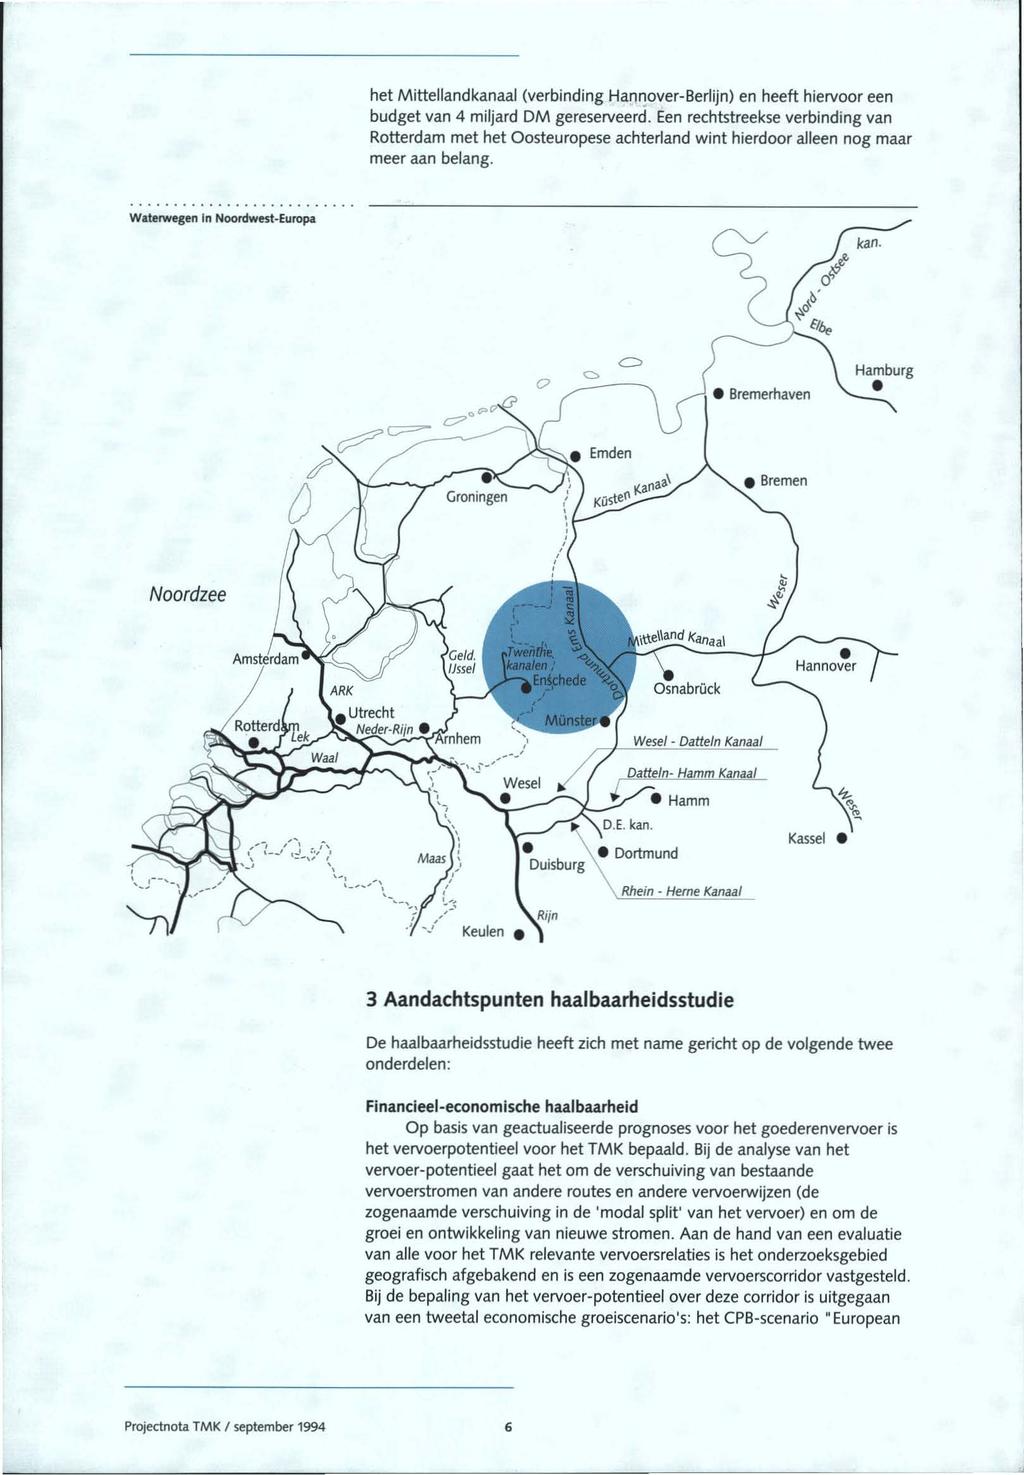 het Mittellandkanaal (verbinding Hannover-Berlijn) en heeft hiervoor een budget van 4 miljard DM gereserveerd.